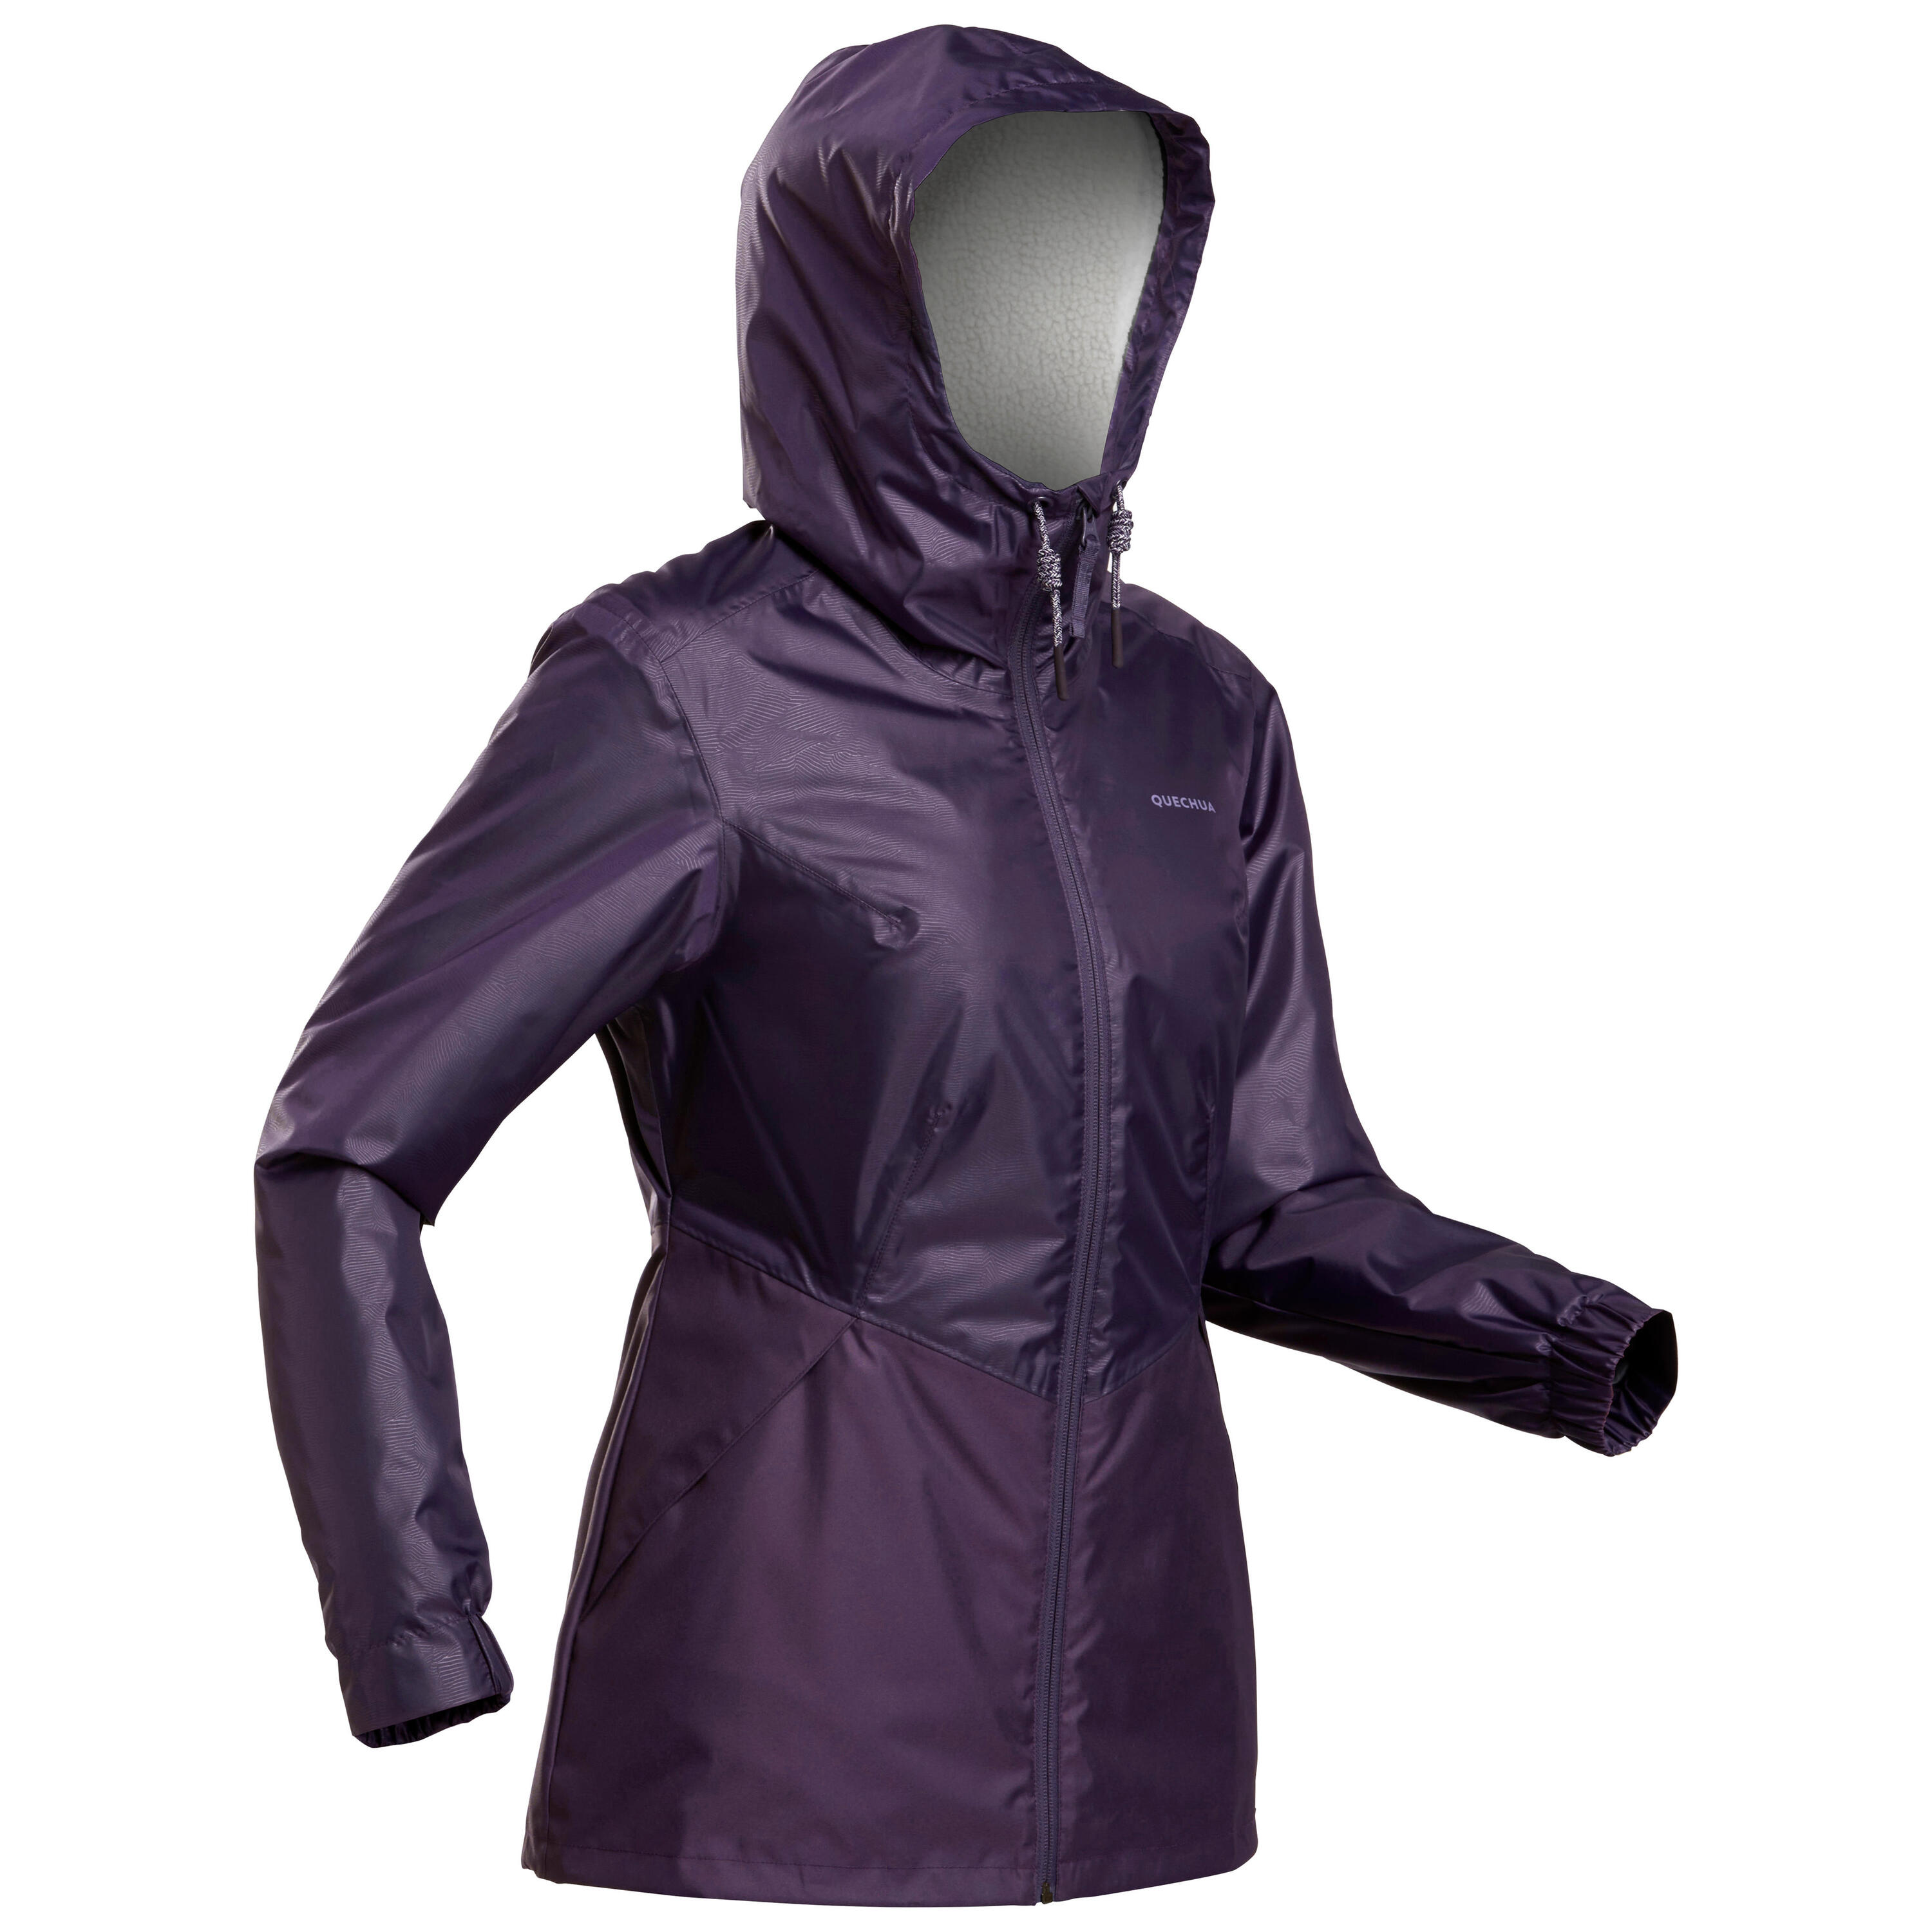 Women’s waterproof winter hiking jacket - SH100 -5°C 7/10